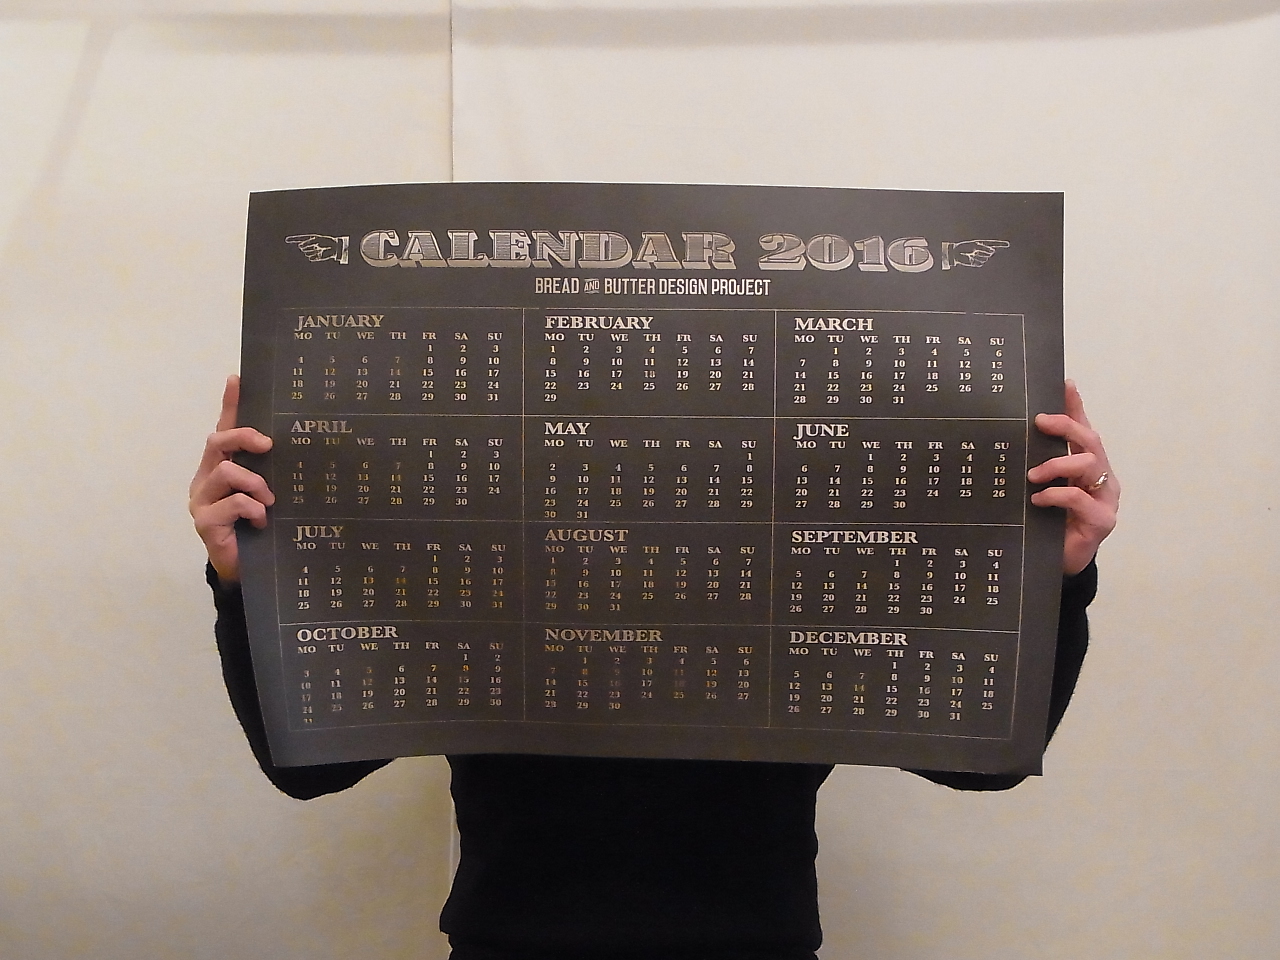 breadandbutter-original-calendar-20151228-1